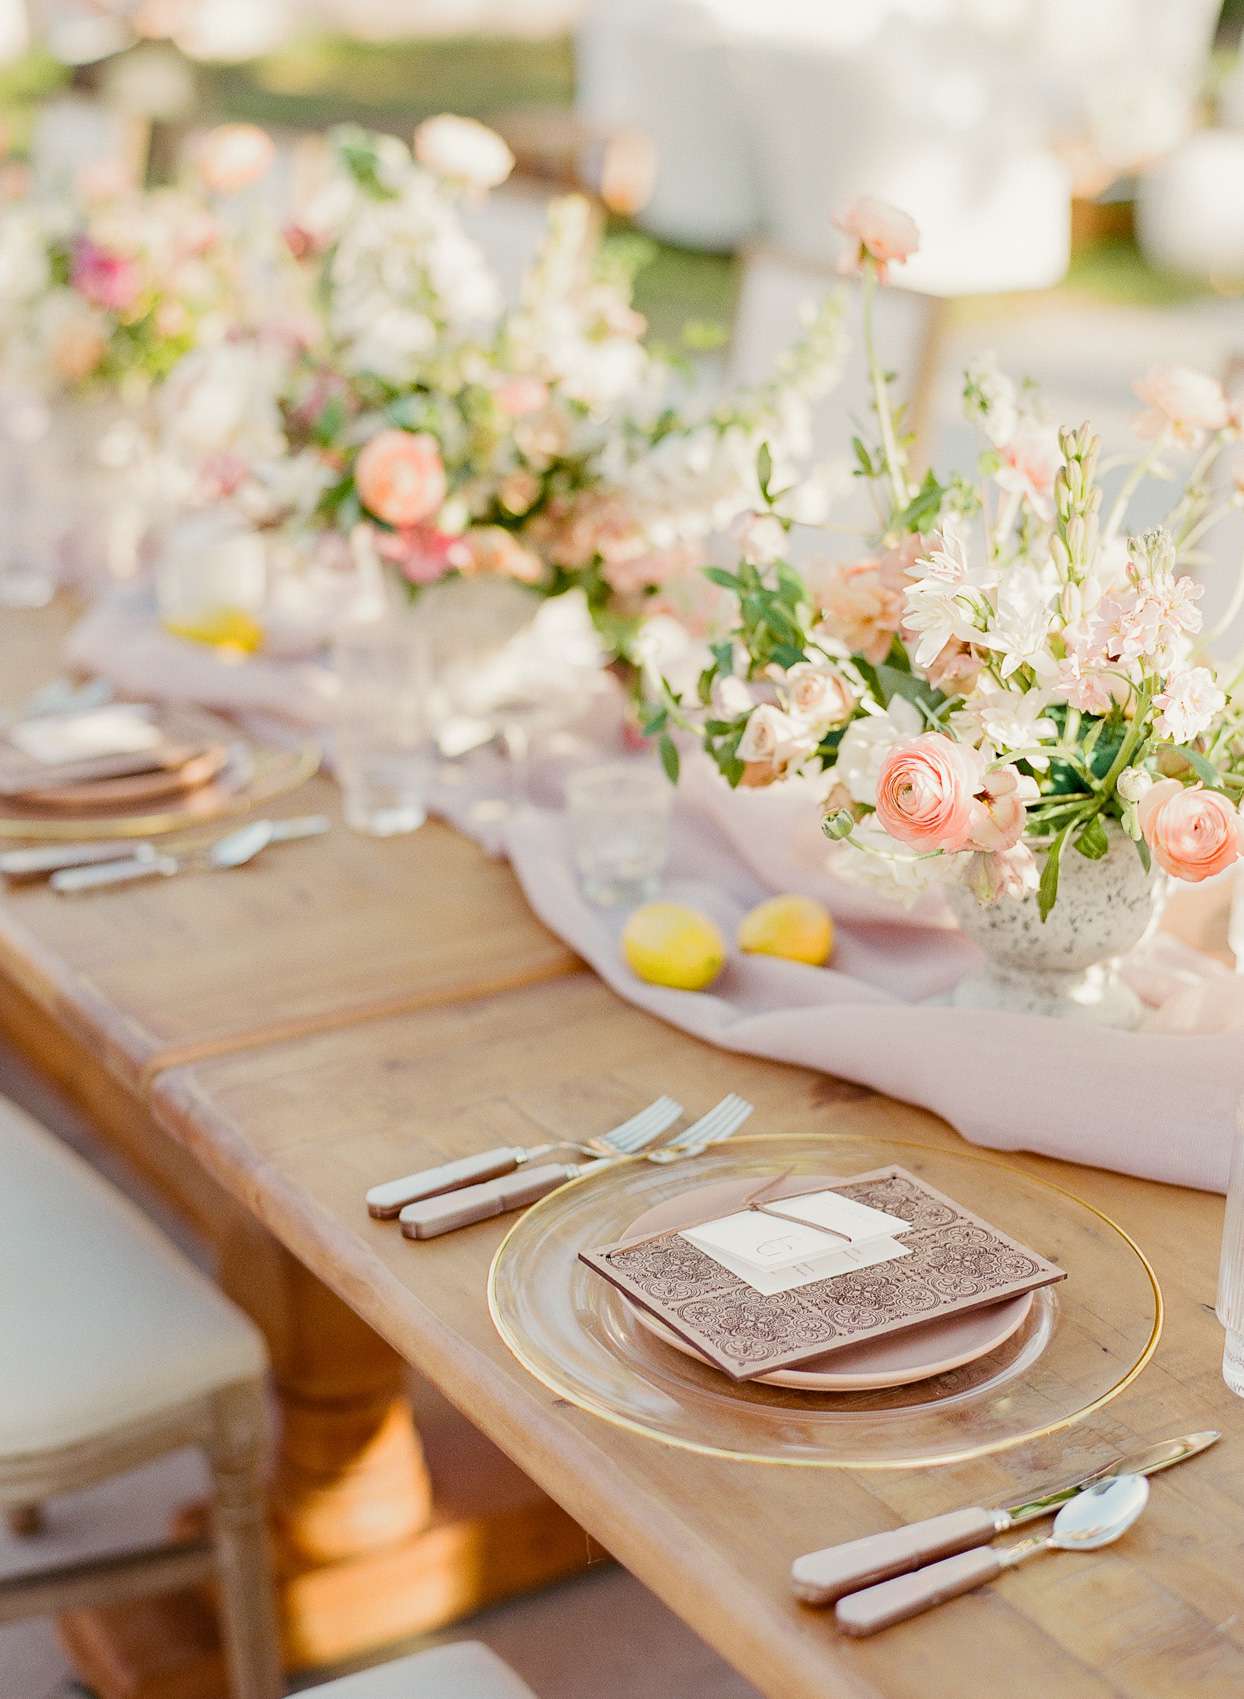 pink floral arrangements and lemons centerpiece table decor